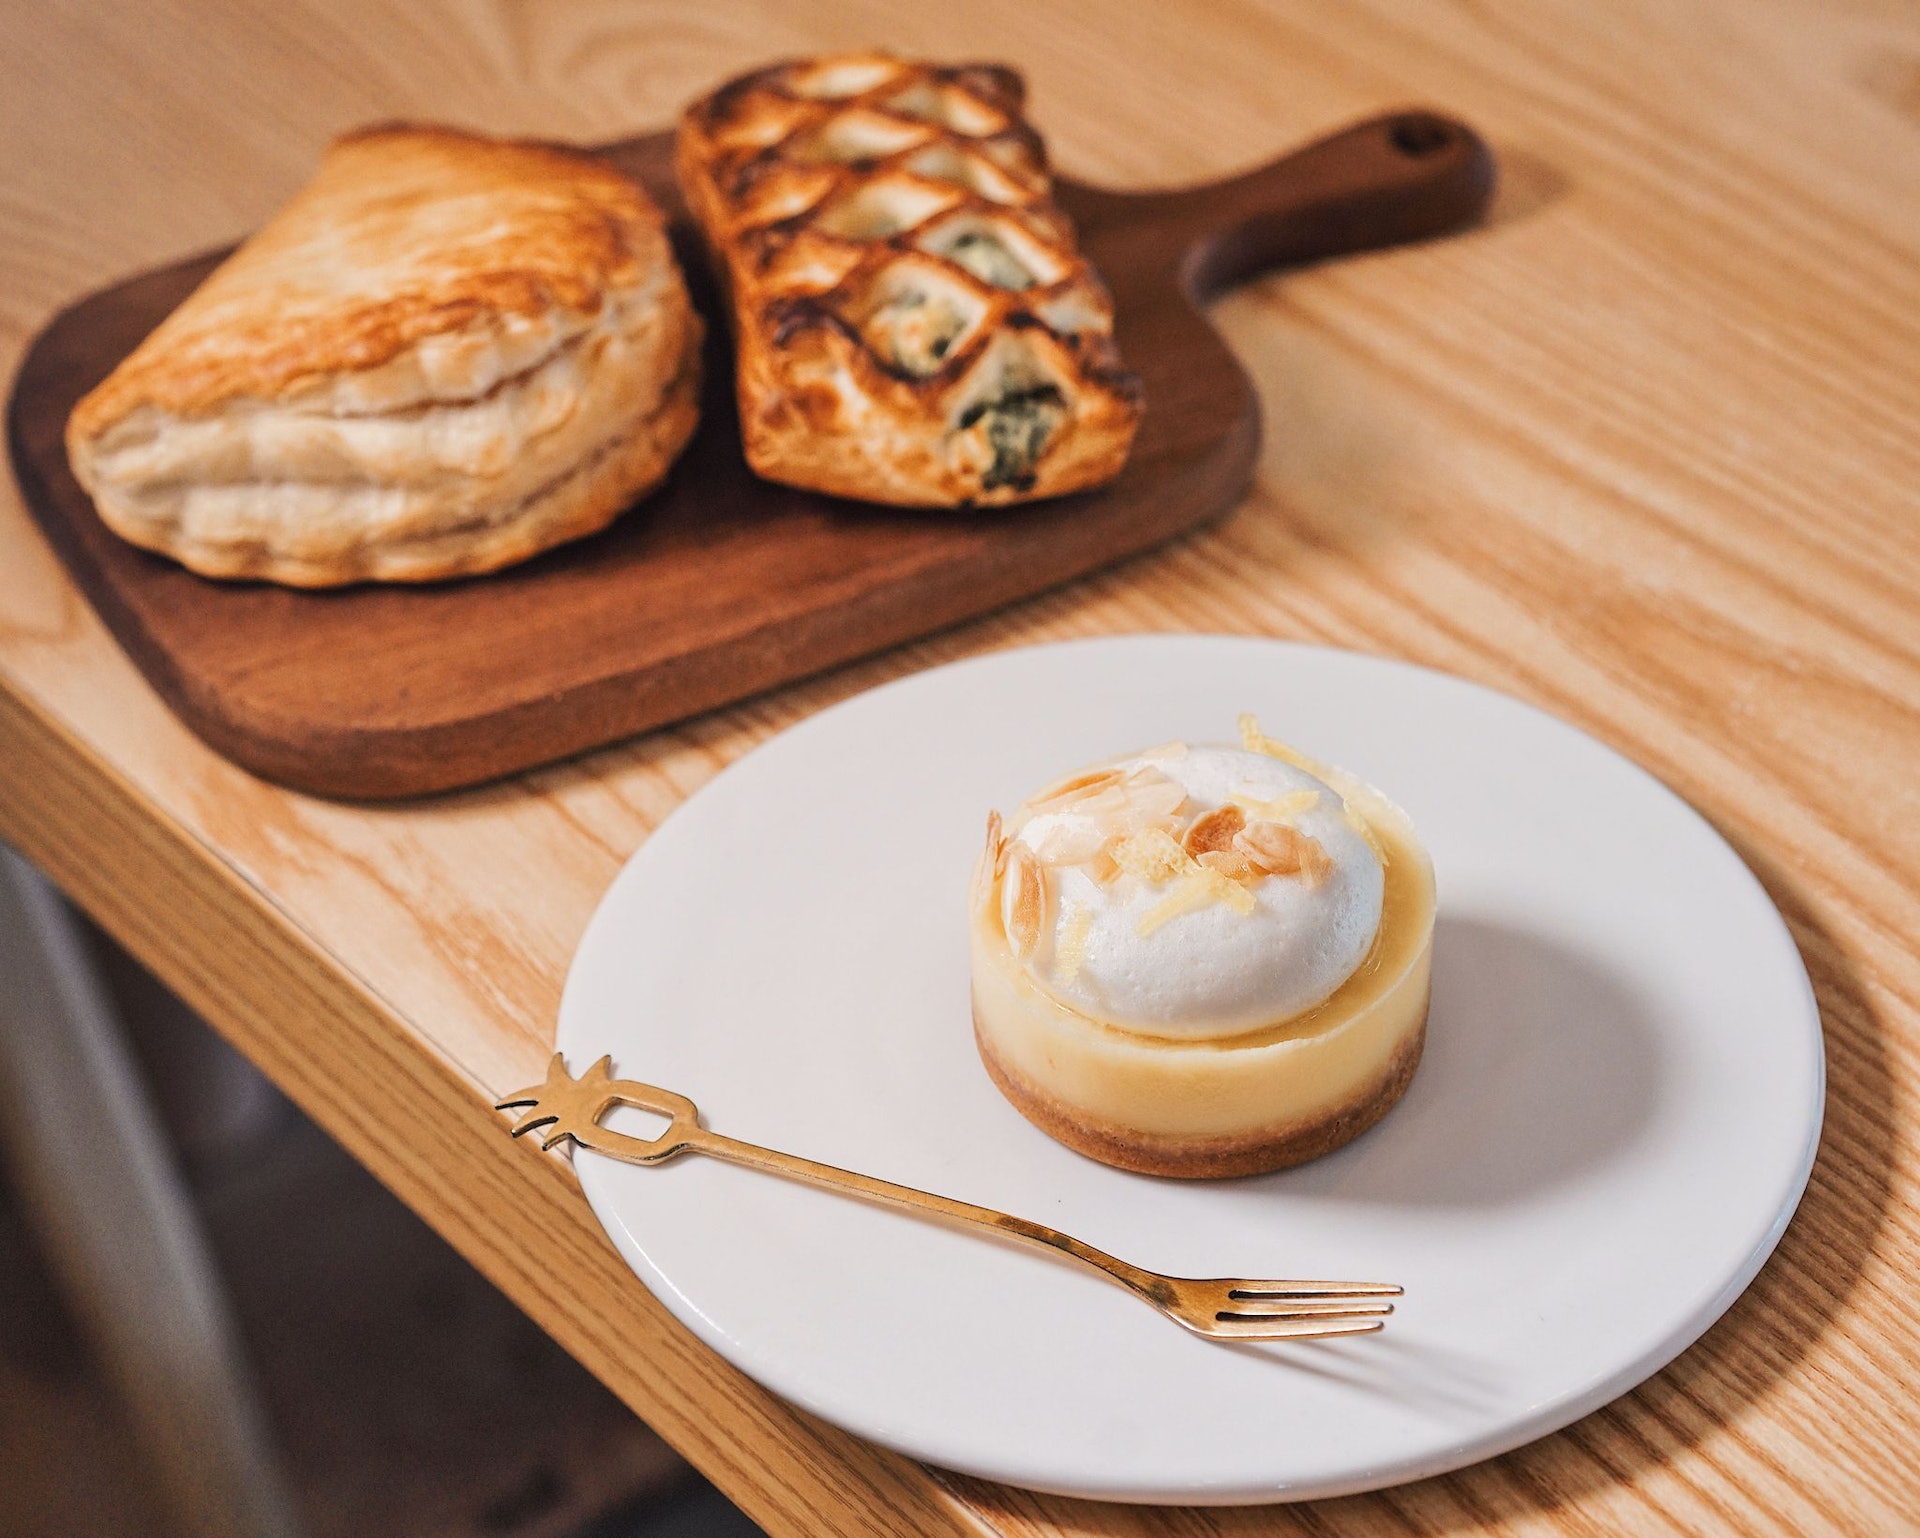 Smart Cafe也有一系列平靚正主食、包點及甜品。